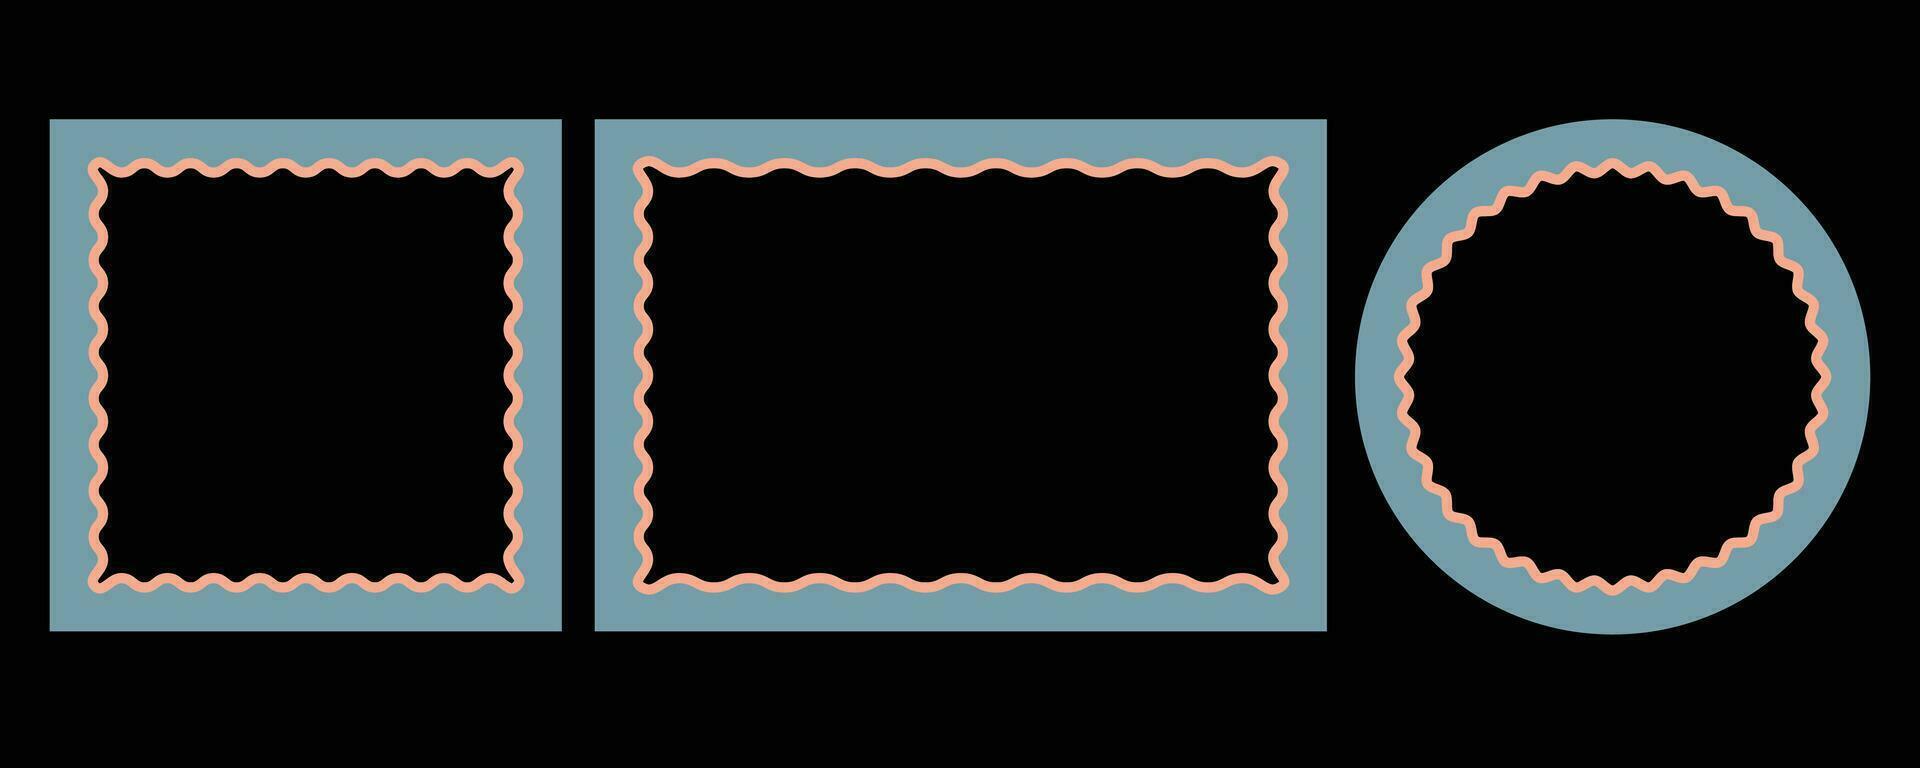 rechteckig, kreisförmig und Platz stilvoll Foto Rahmen mit wellig Grenzen auf schwarz Hintergrund vektor